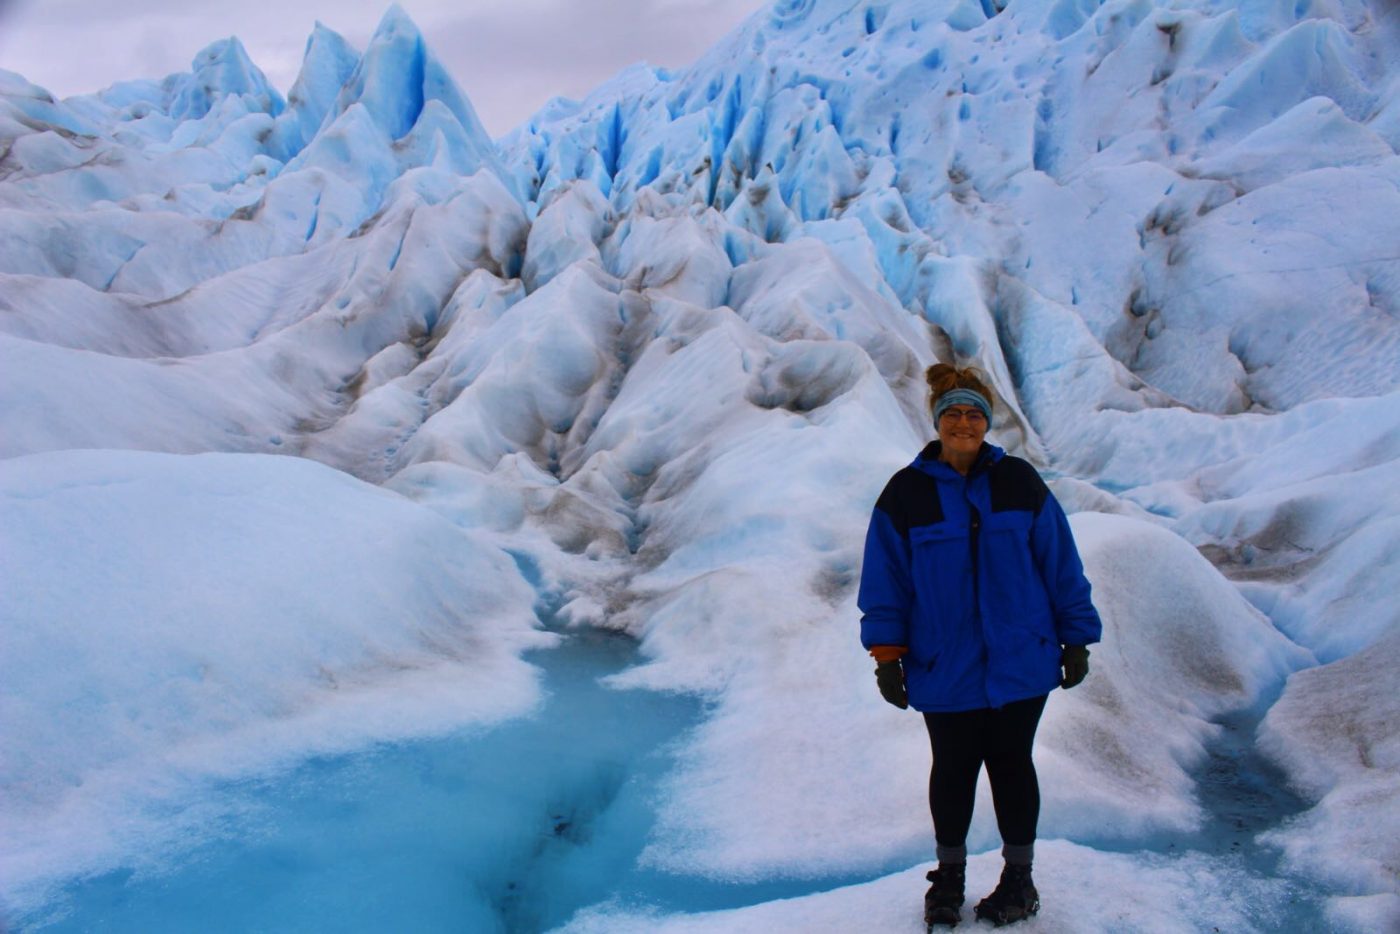 Off season travel: Ice hiking in Patagonia. Photo by Harlee Keller